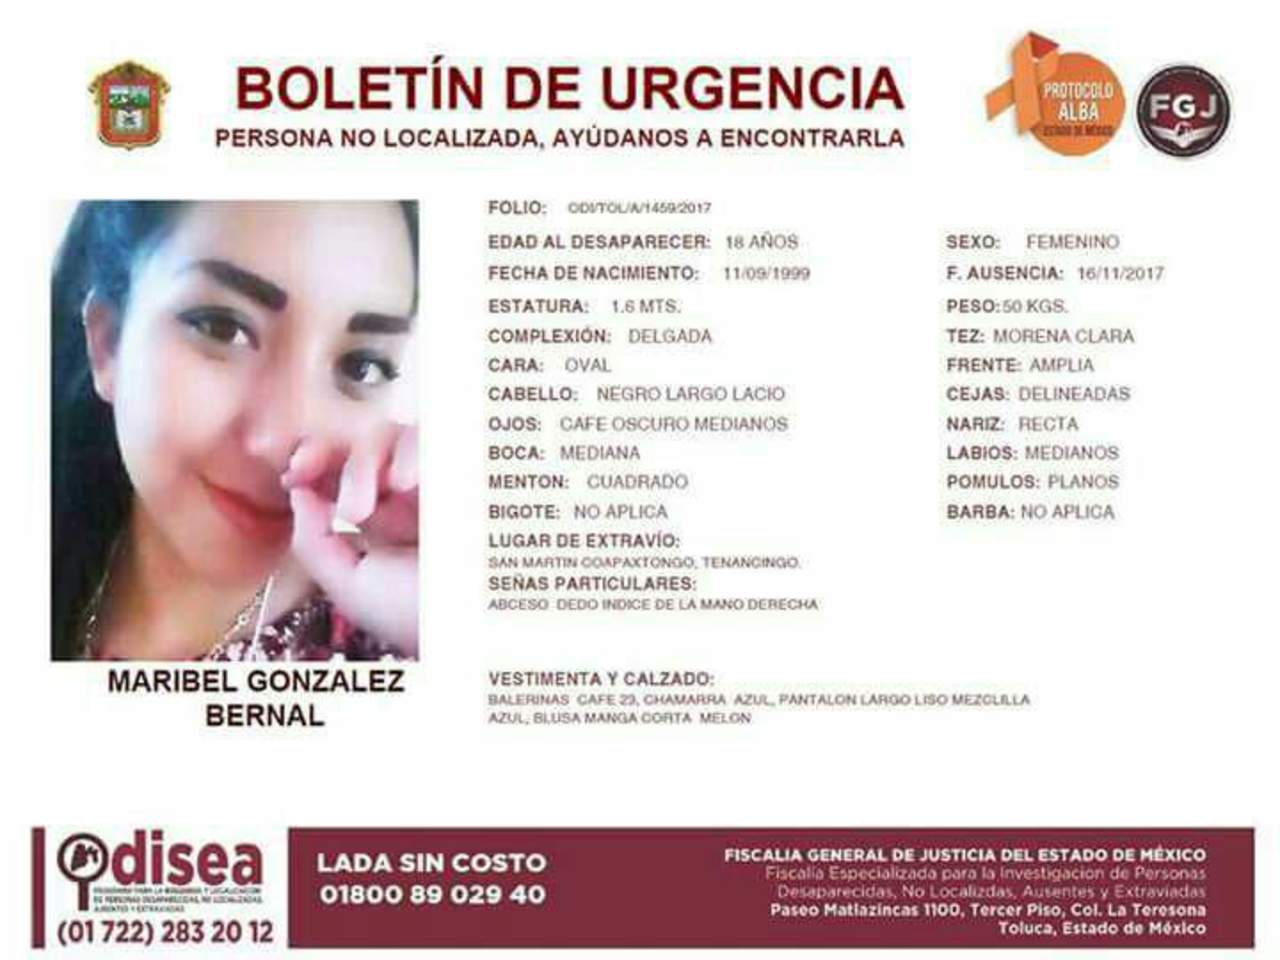 Maribel González Bernal de 18 años de edad, había desaparecido el 16 de noviembre, cuando salió de su casa. (TWITTER)